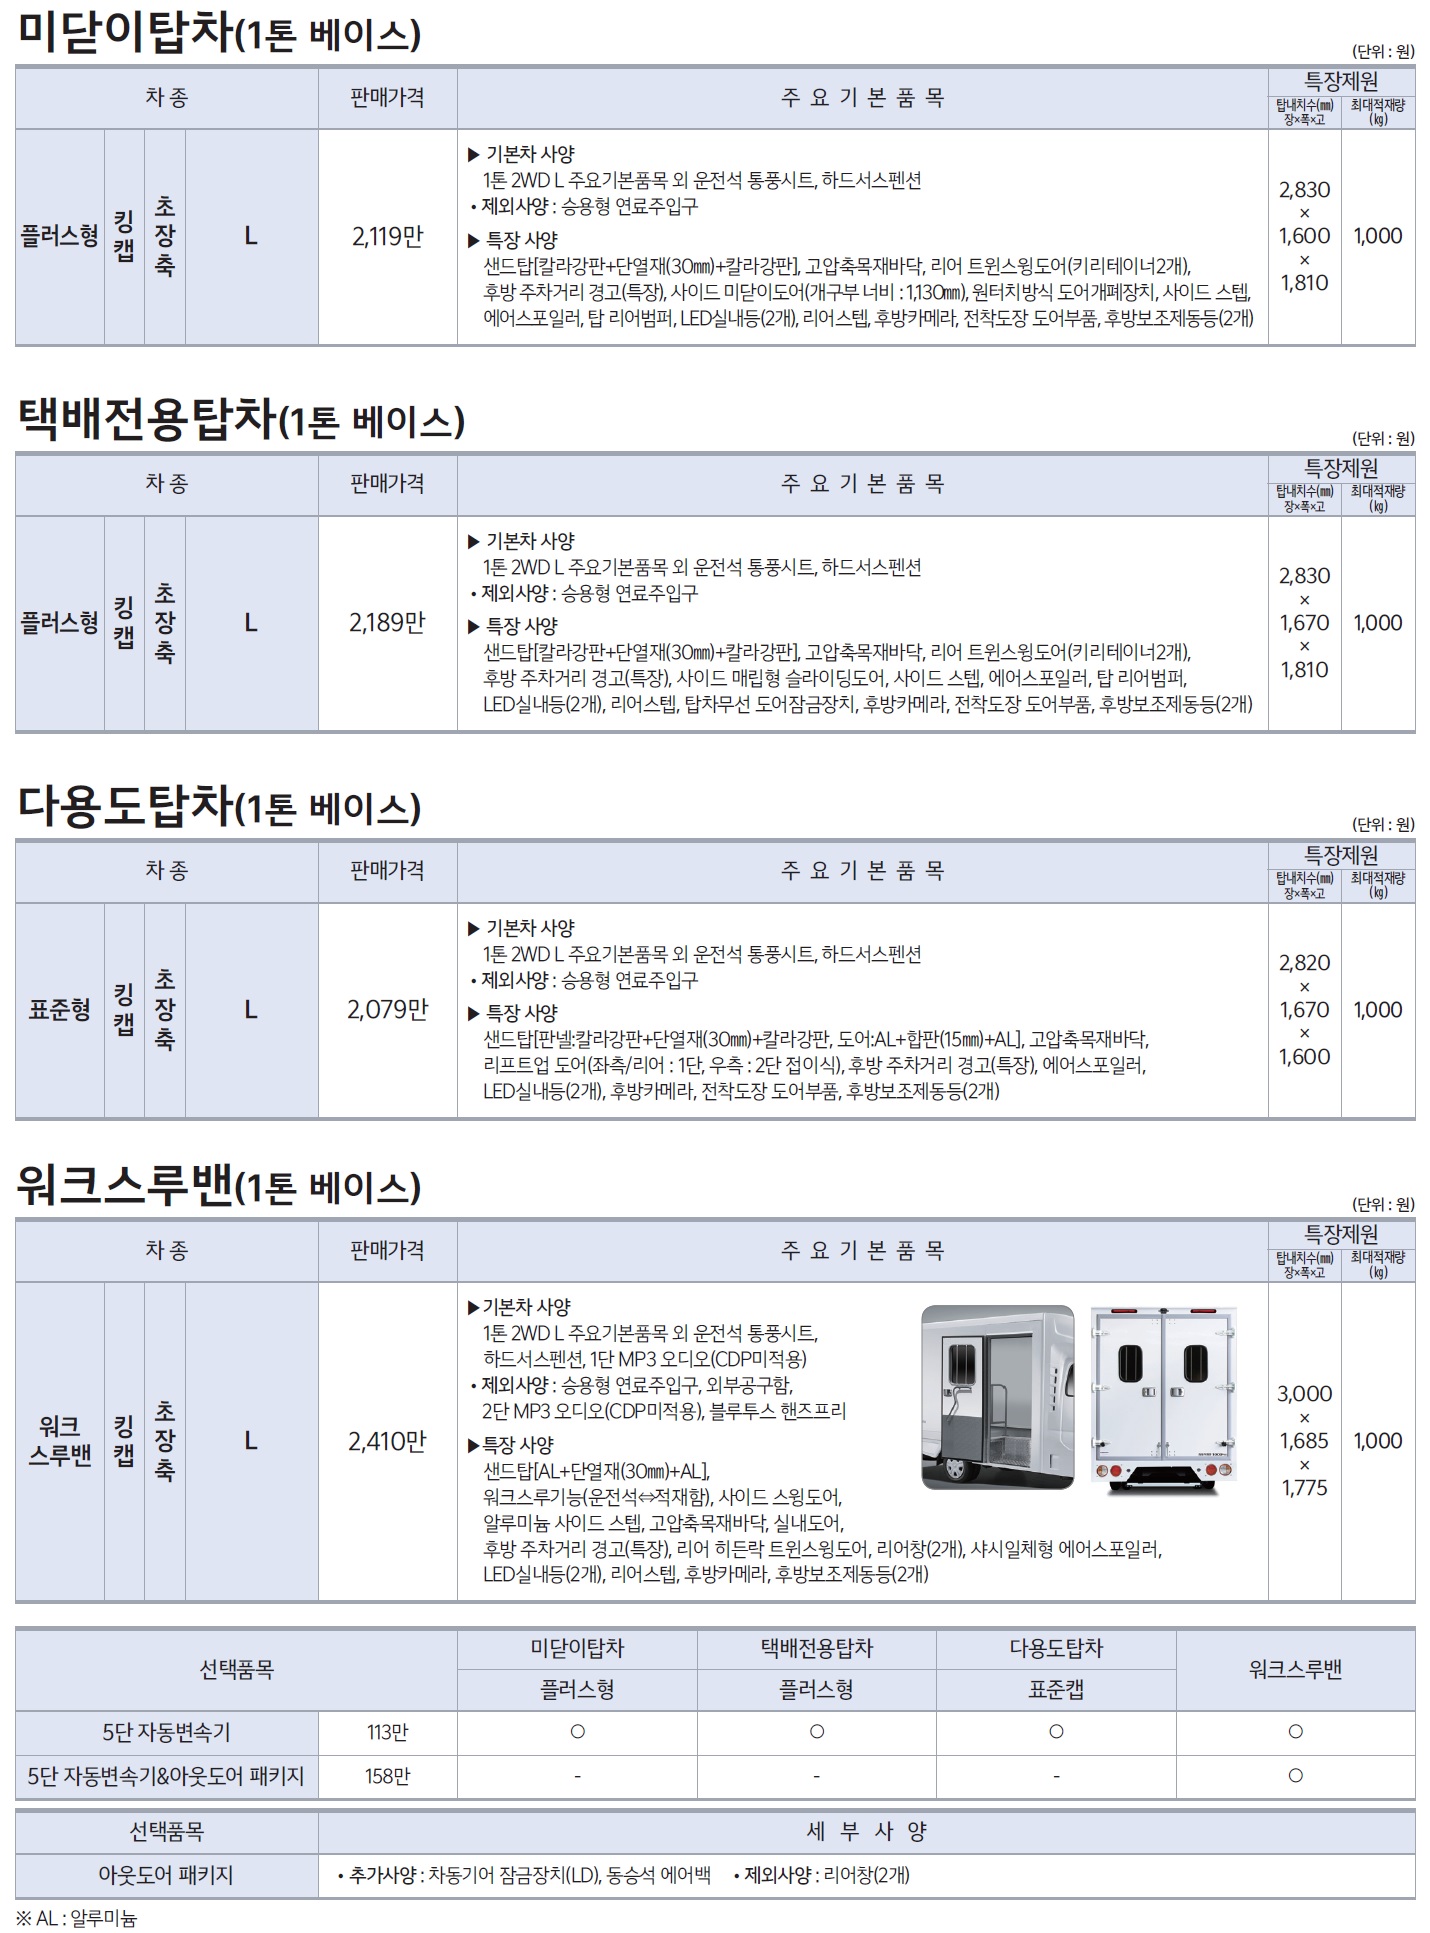 봉고3 특장차 가격표 - 2021년 02월 -5.jpg